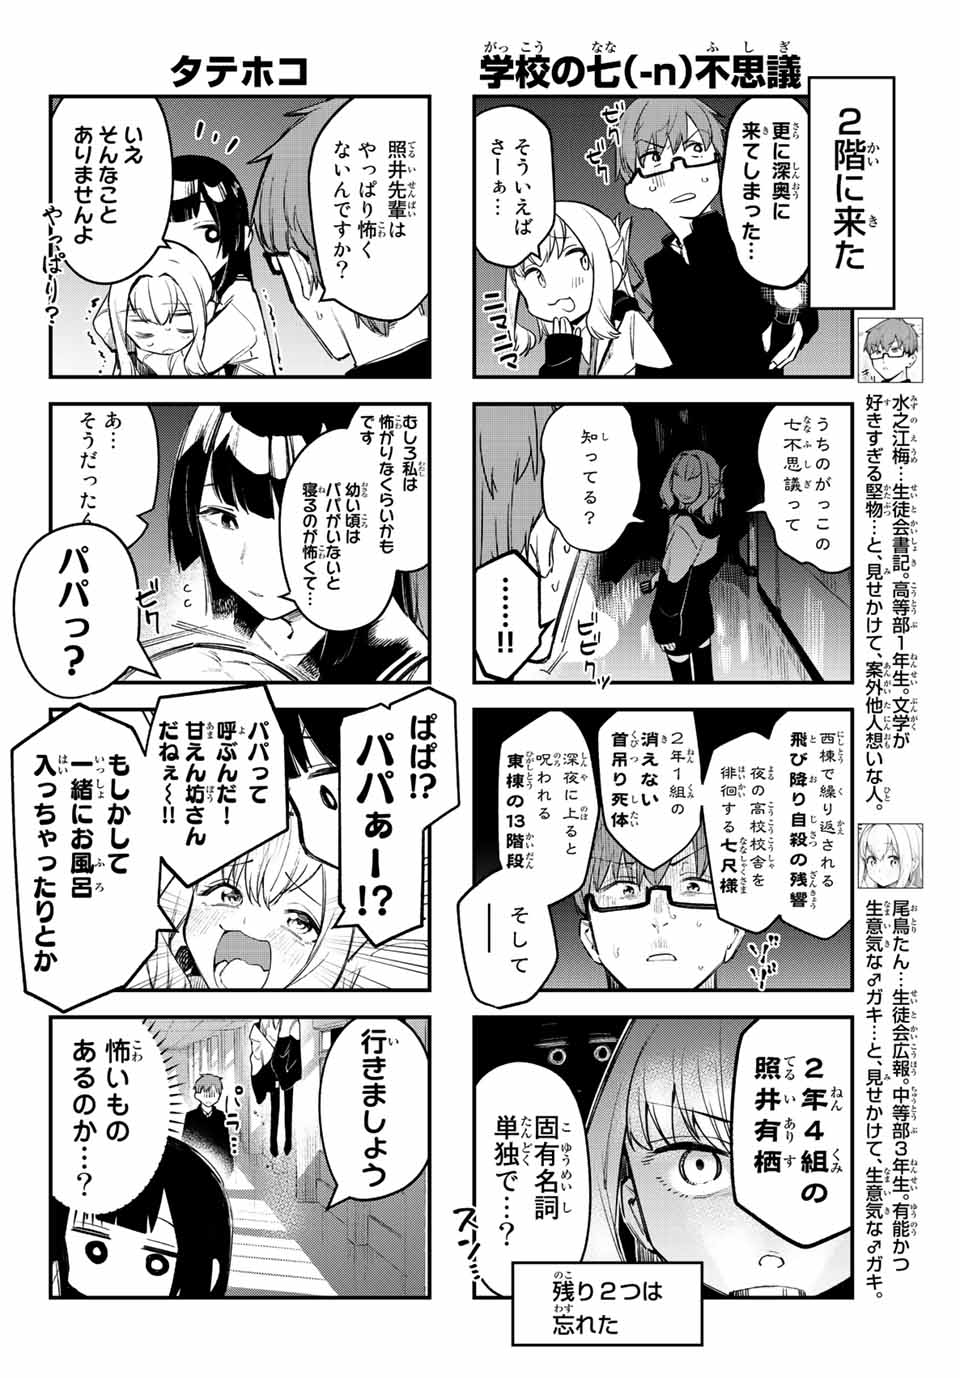 Seitokai mi mo Ana wa Aru! - Chapter 7 - Page 4